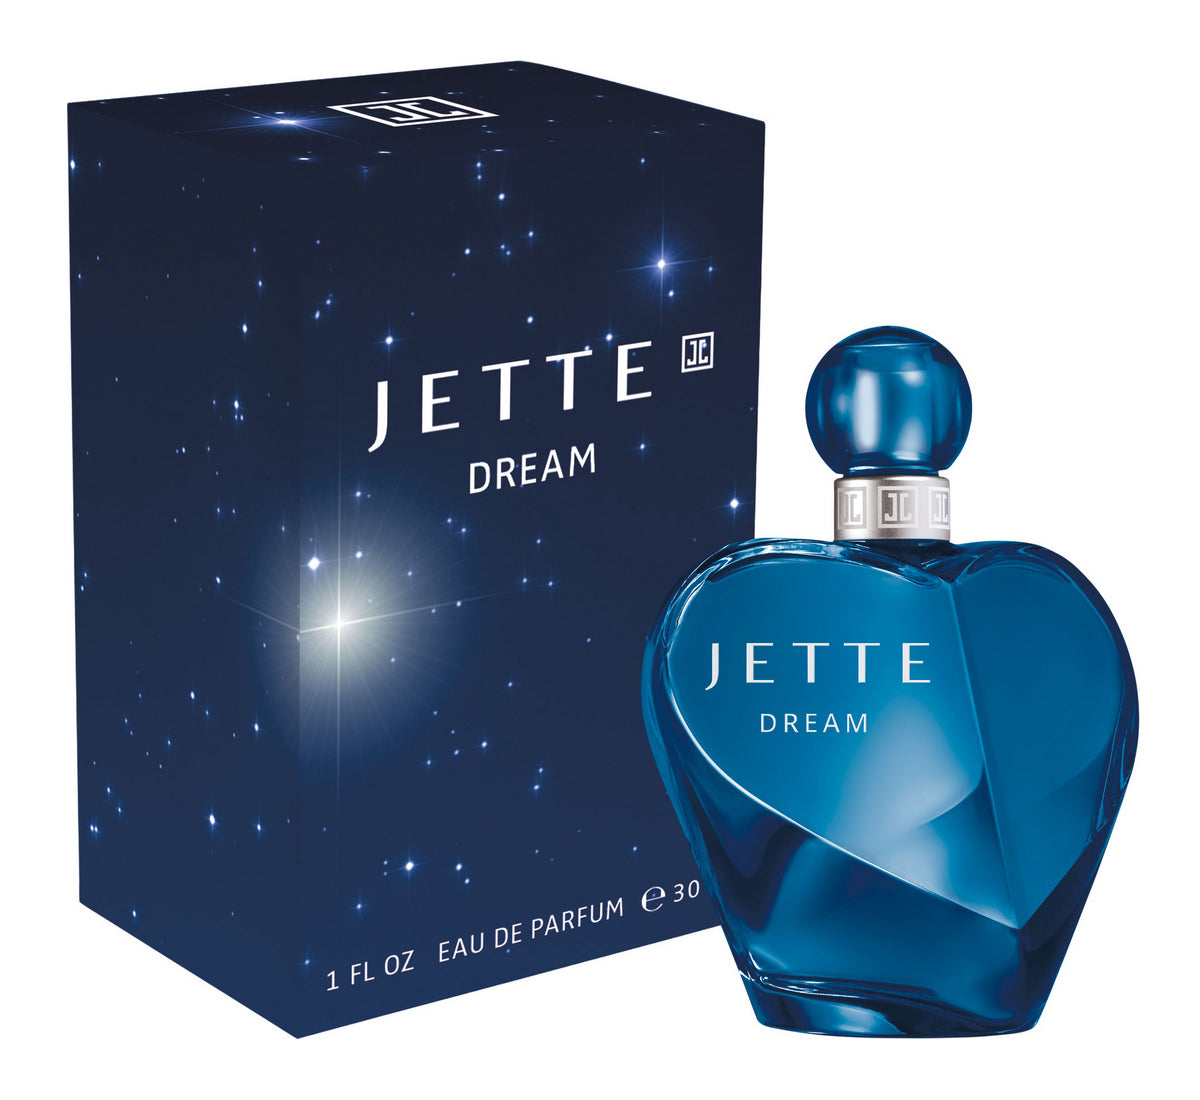 Jette Dream Eau de Parfum